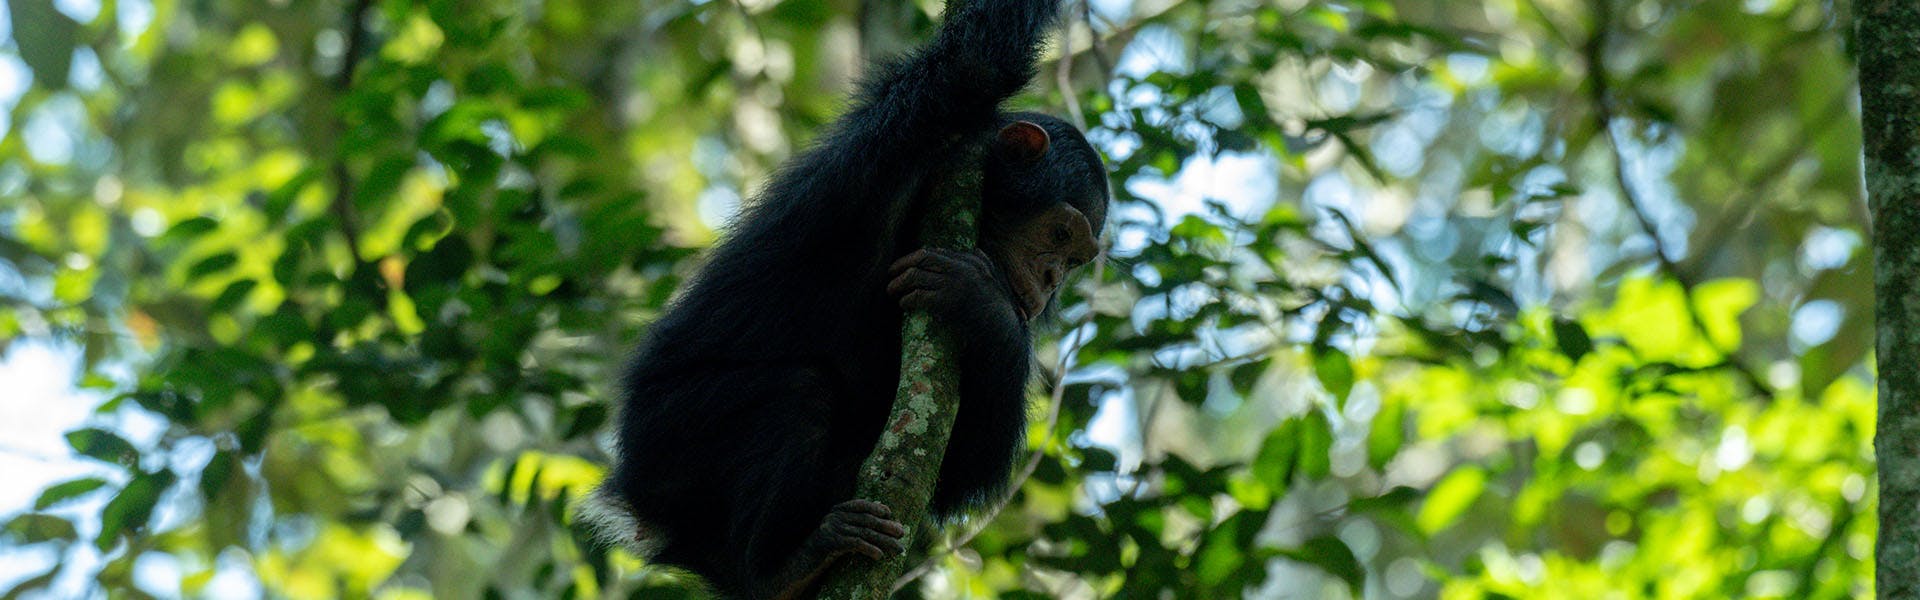 Best of Uganda: Chimps and Gorillas 5 Day Safari